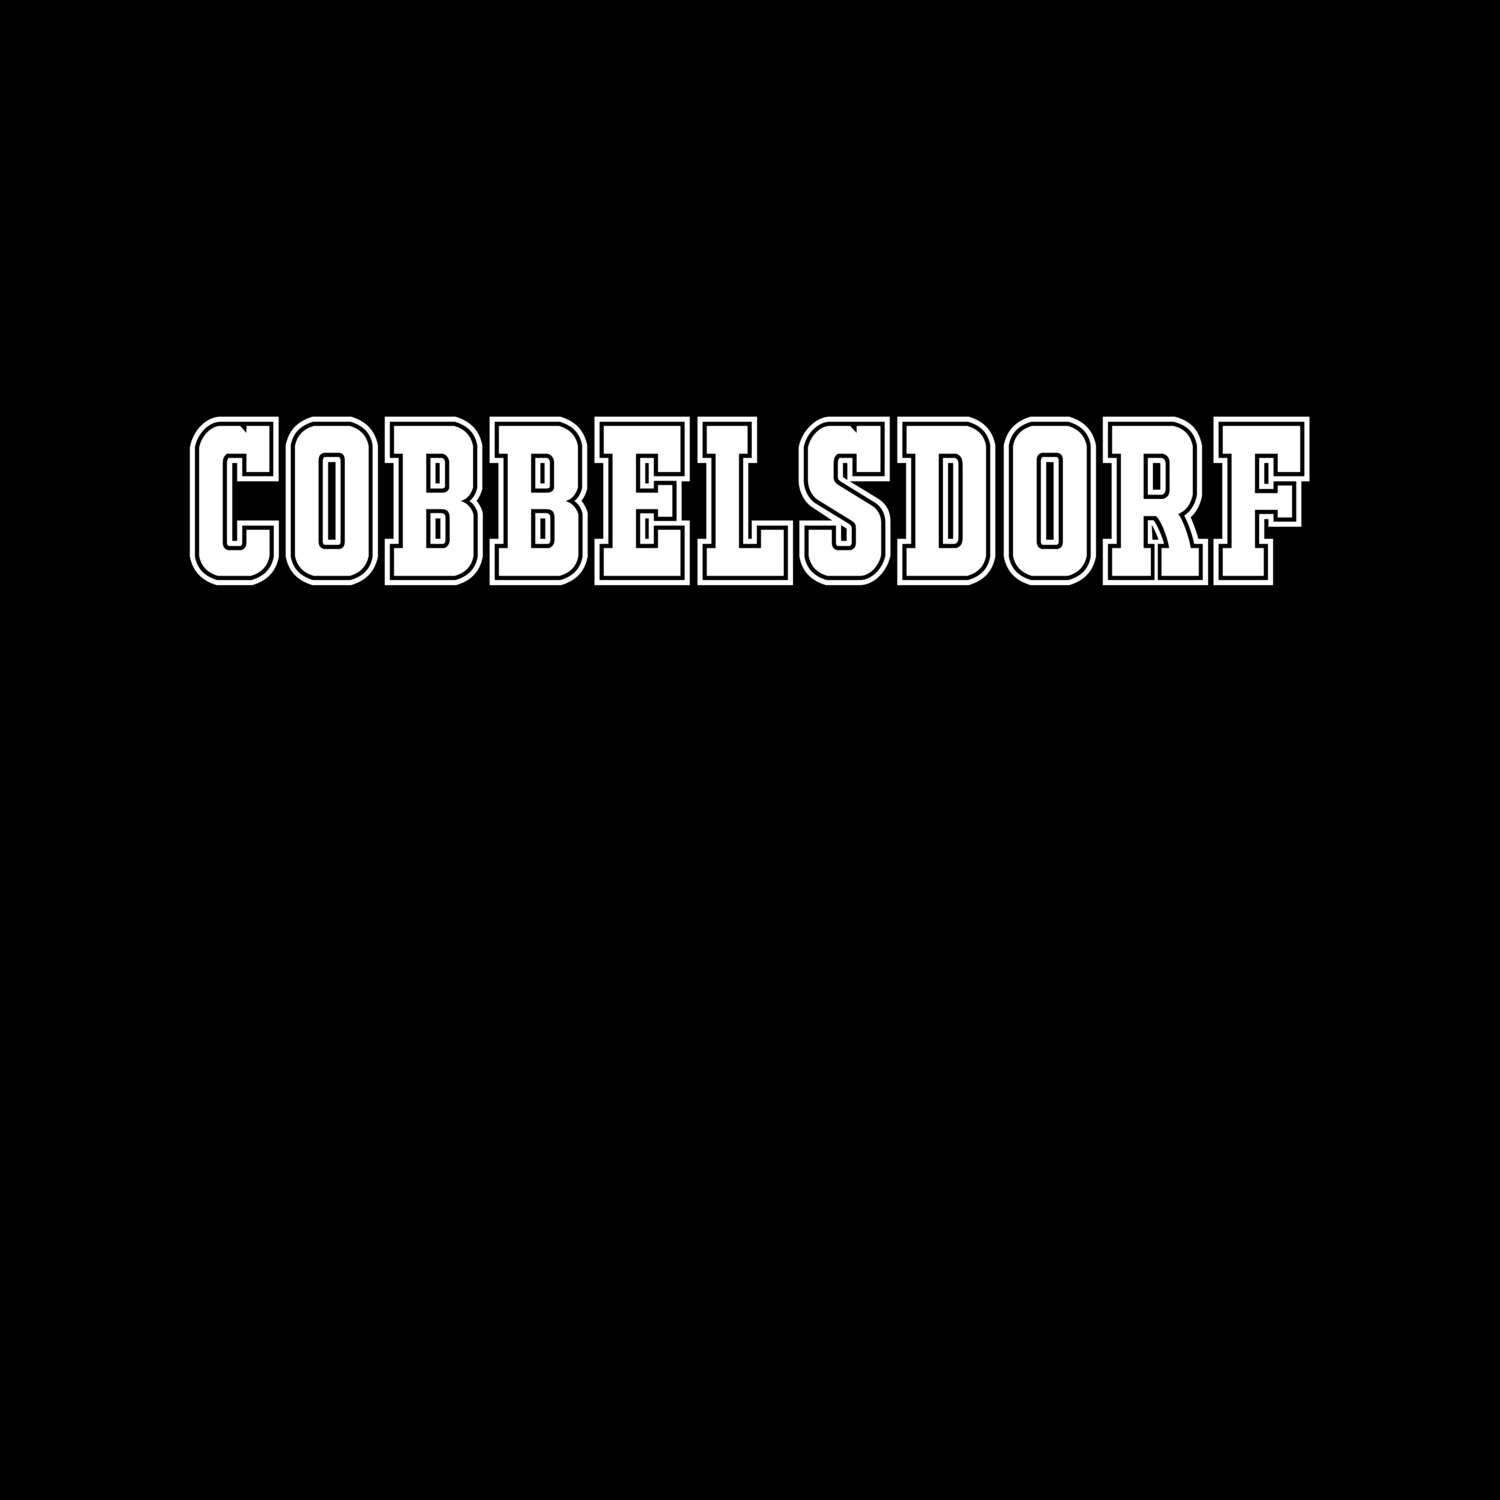 Cobbelsdorf T-Shirt »Classic«